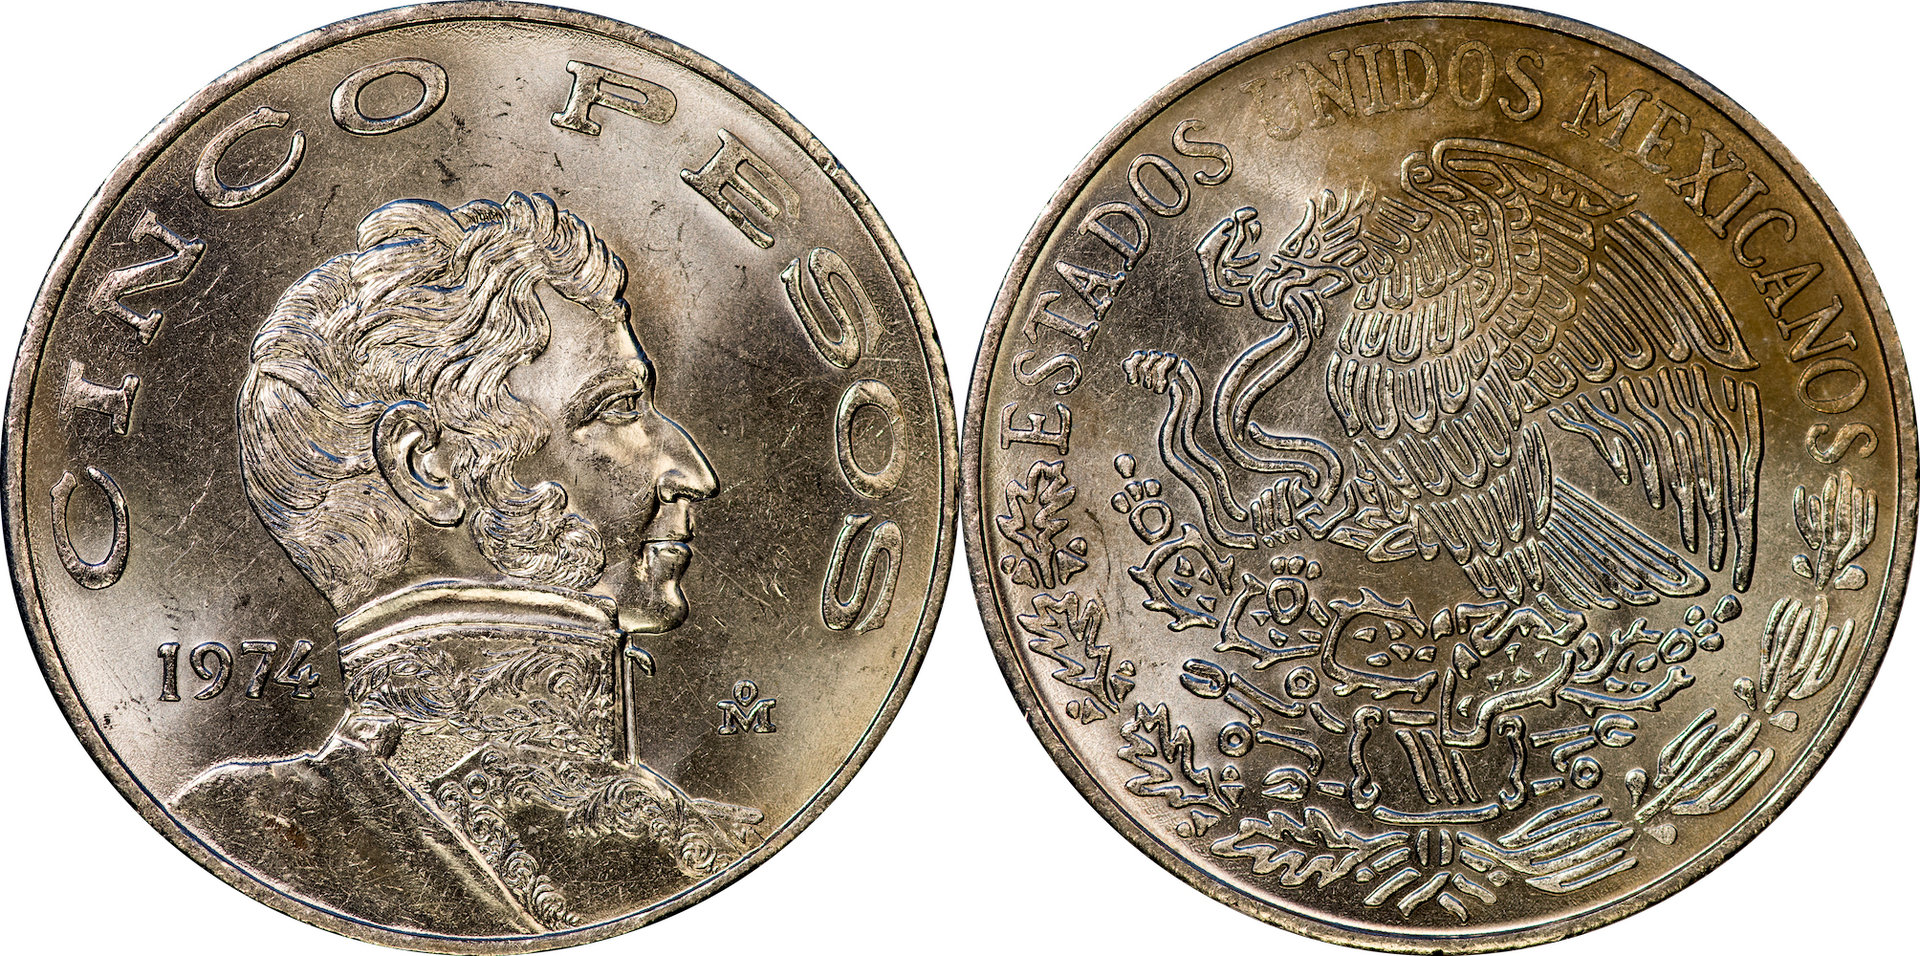 Mexico - 1974 5 Pesos.jpg